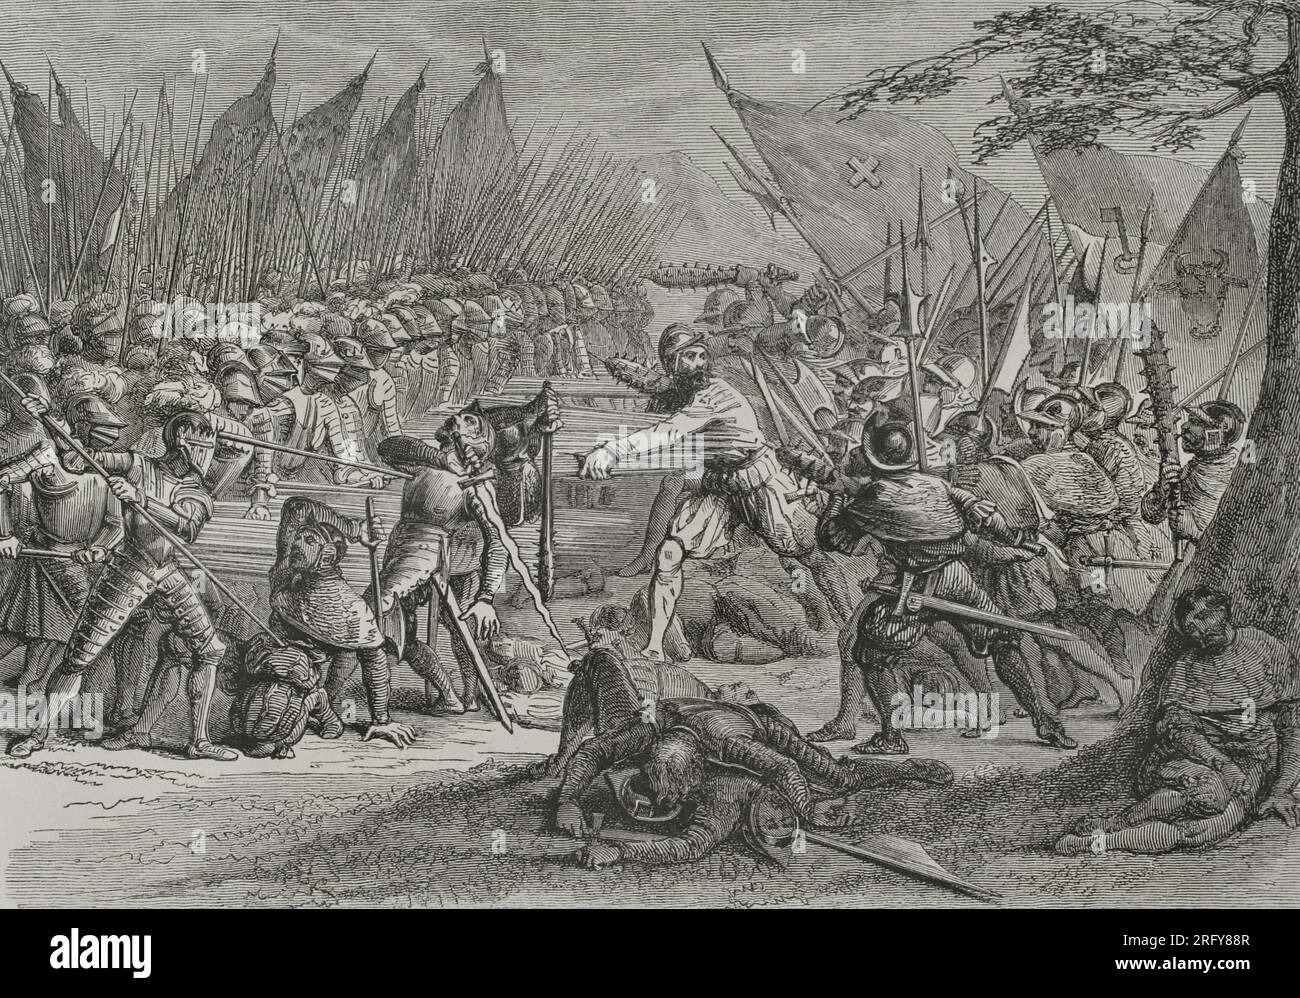 Battaglia di Sempach, 9 luglio 1386. Leopoldo III (1351-1386), duca d'Austria, fu sconfitto dall'esercito della vecchia Confederazione svizzera. L'eroica morte di Arnold Winkelried, un contadino svizzero che decise la vittoria delle truppe confederate. Secondo la leggenda, gli svizzeri inizialmente non furono in grado di sfondare i ranghi stretti dei picchieri asburgici. Winkelried gridò che avrebbe sfondato la linea dei soldati e poi gettato sulle picche austriache, abbattendo alcuni di loro con il suo corpo, sfondando così il fronte austriaco e permettendo agli svizzeri di attaccare e ottenere la vittoria. IT Foto Stock